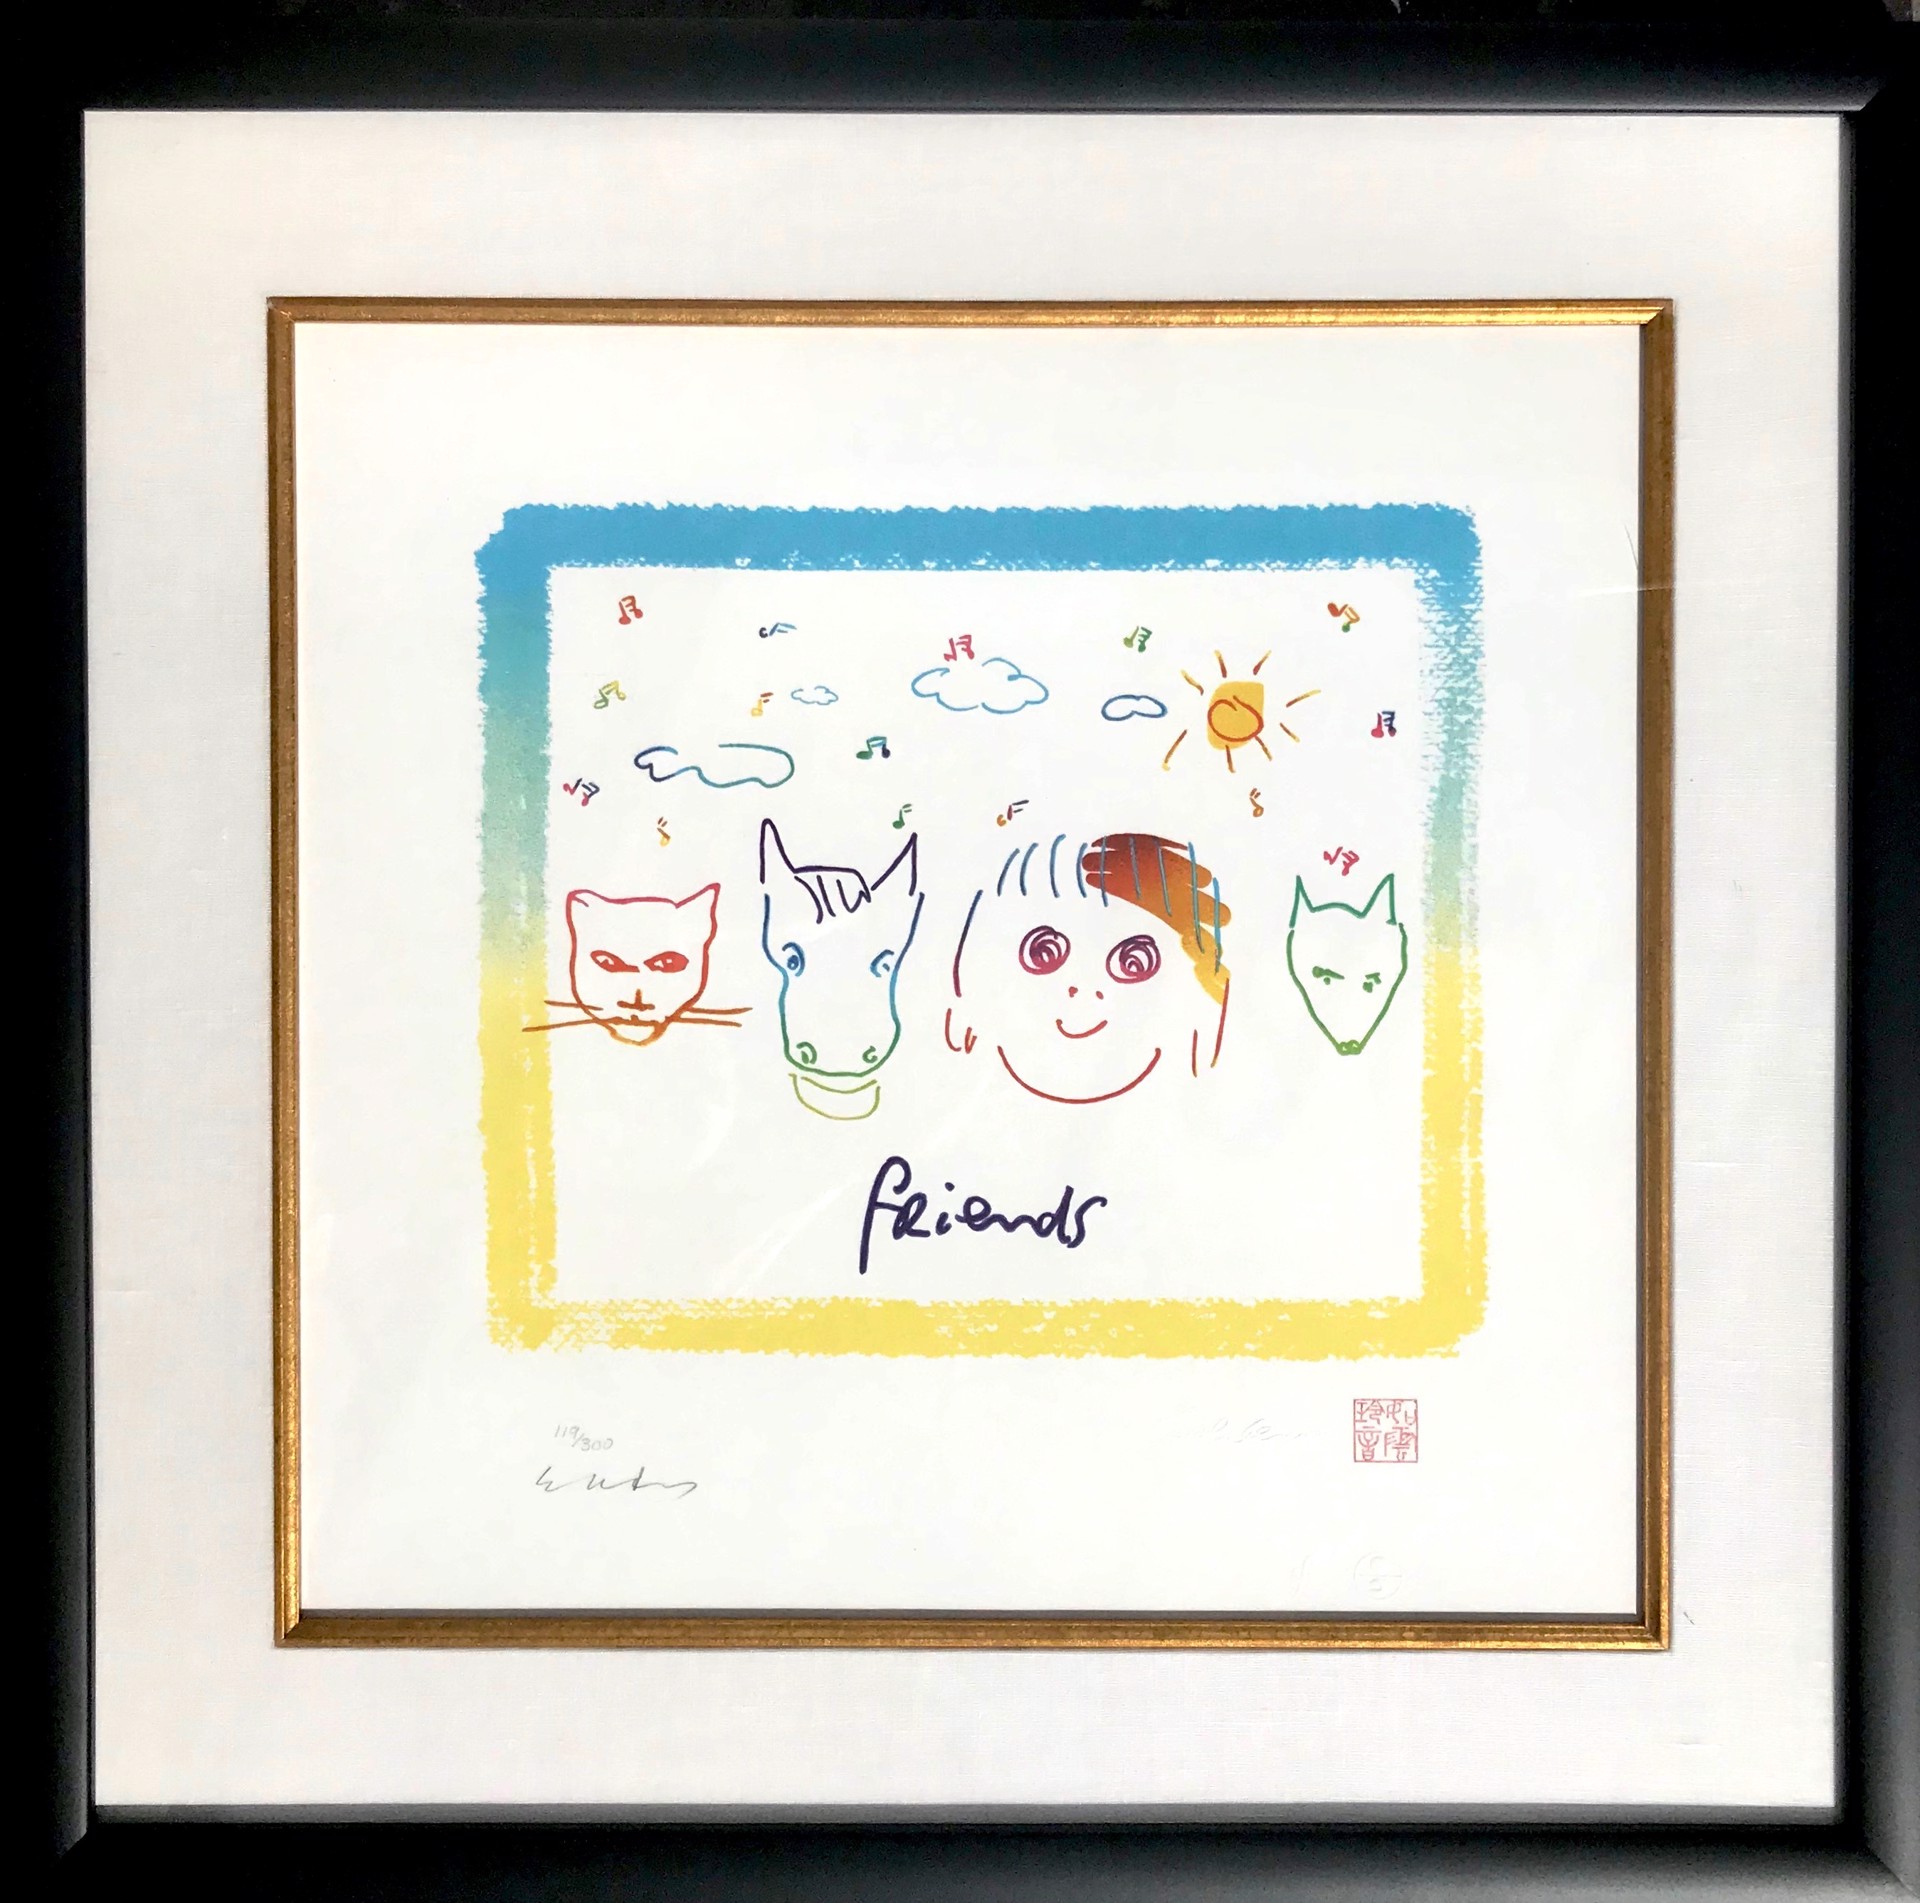 Friends (Framed) by John Lennon